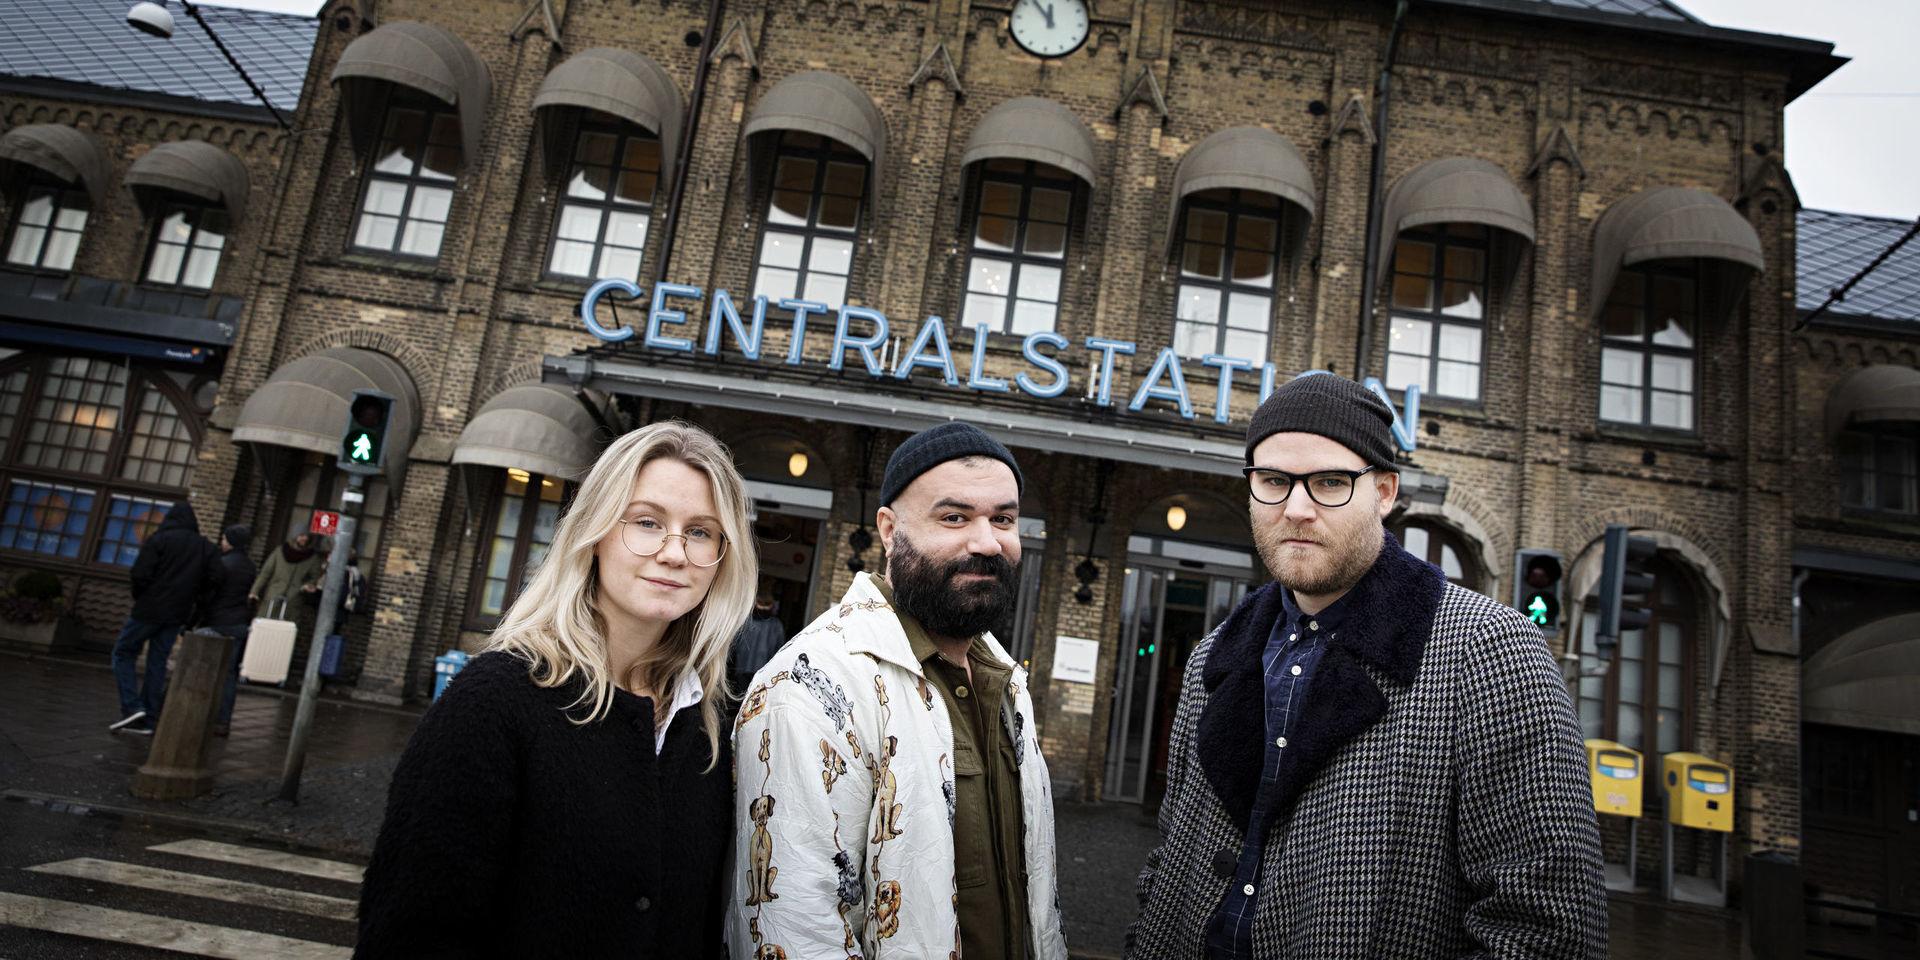 Evelina Jacobsson, Khaled Alesmael och Mats Adler är tre av fem regissörer som deltagit stafettfilmen the Location som är inspelad på centralstationen i Göteborg. Regissörerna Robert Vukajlo och Tove Jonstoij saknas på bilden.